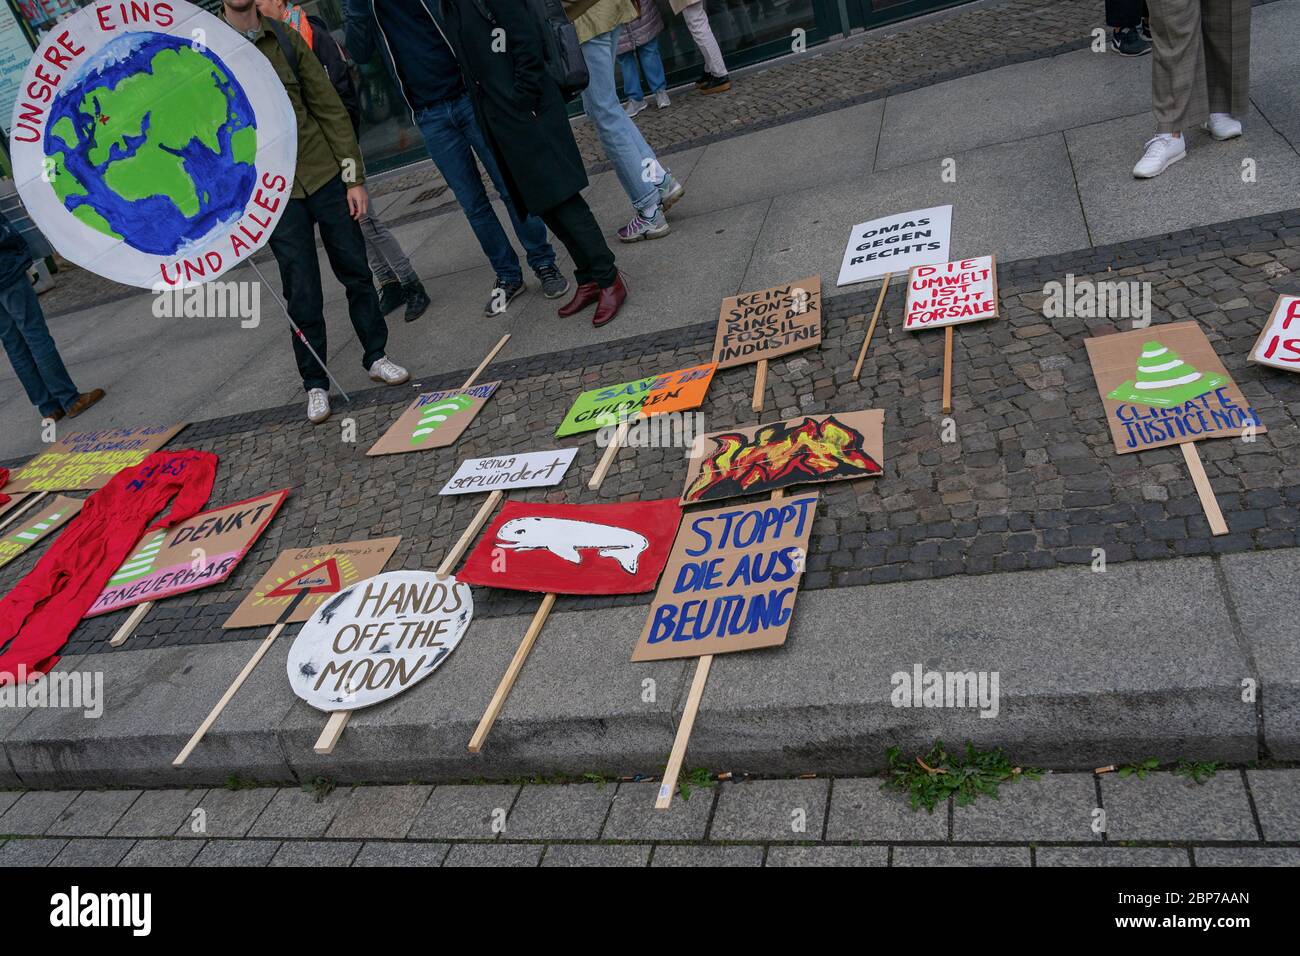 Les élèves manifestent avec des affiches de protestation pendant les vendredis pour une future grève climatique à la porte de Brandebourg - Pariser Platz - à Berlin. Banque D'Images